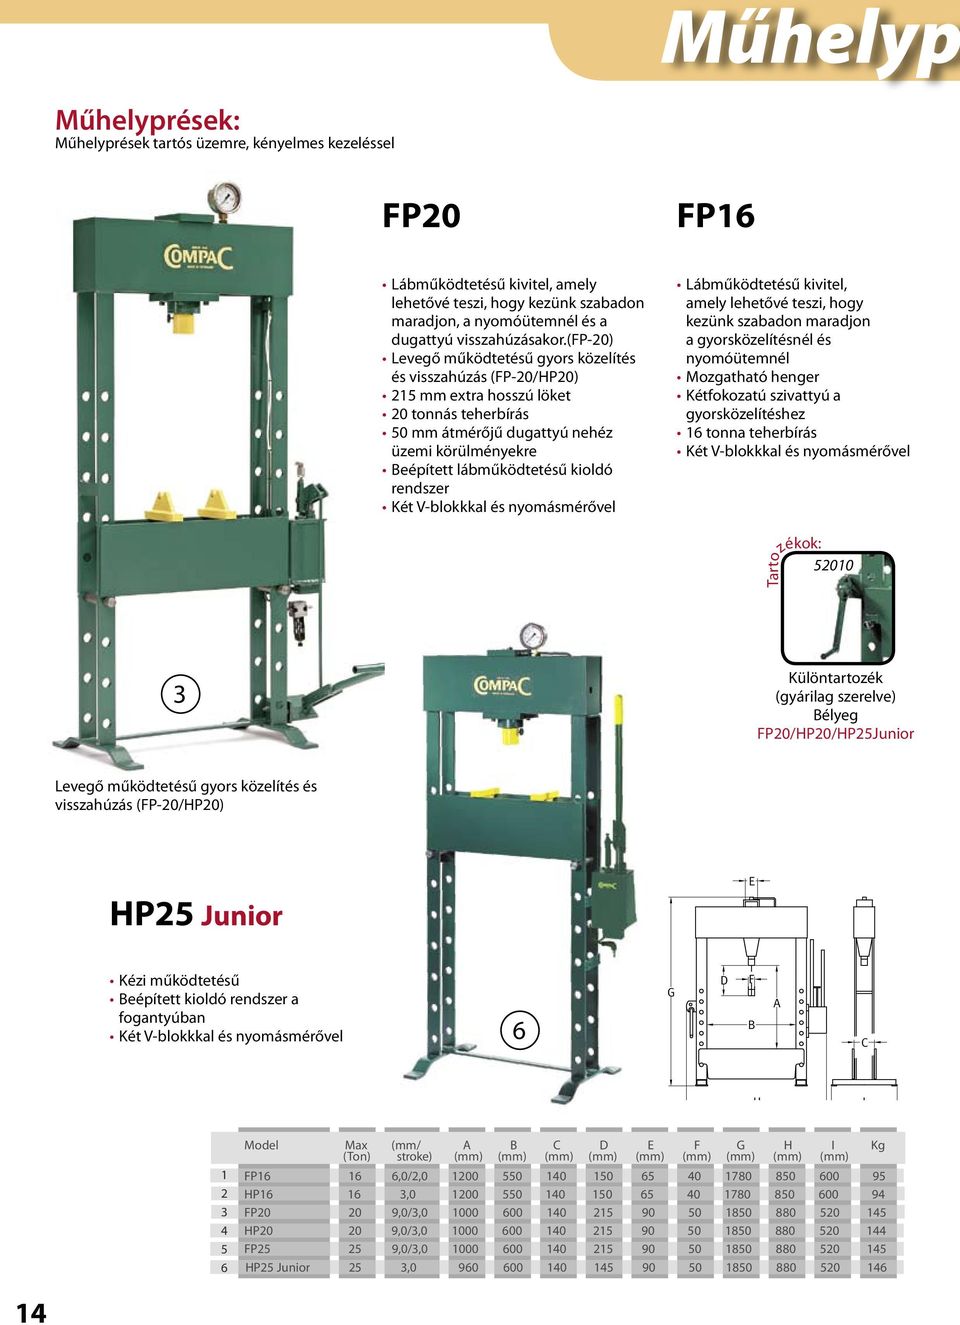 (fp-0) Levegő működtetésű gyors közelítés és visszahúzás (FP-0/HP0) mm extra hosszú löket 0 tonnás teherbírás 0 mm átmérőjű dugattyú nehéz üzemi körülményekre eépített lábműködtetésű kioldó rendszer